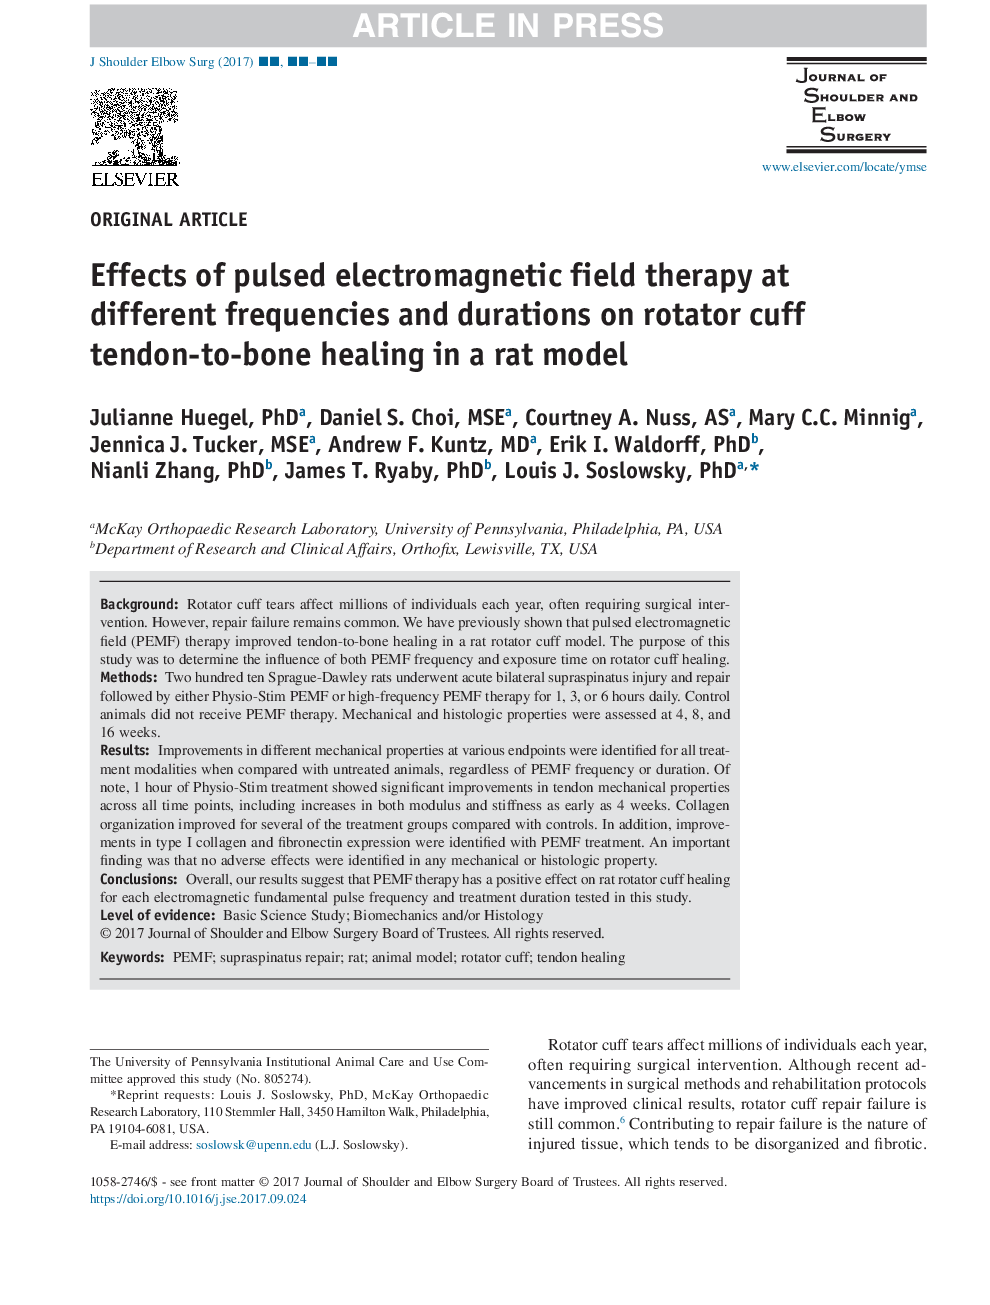 اثرات درمان میدان الکترومغناطیسی پالس در فرکانس ها و مدت زمان های مختلف بر روی تاندون روده ای به استخوان کاف در یک مدل موش 